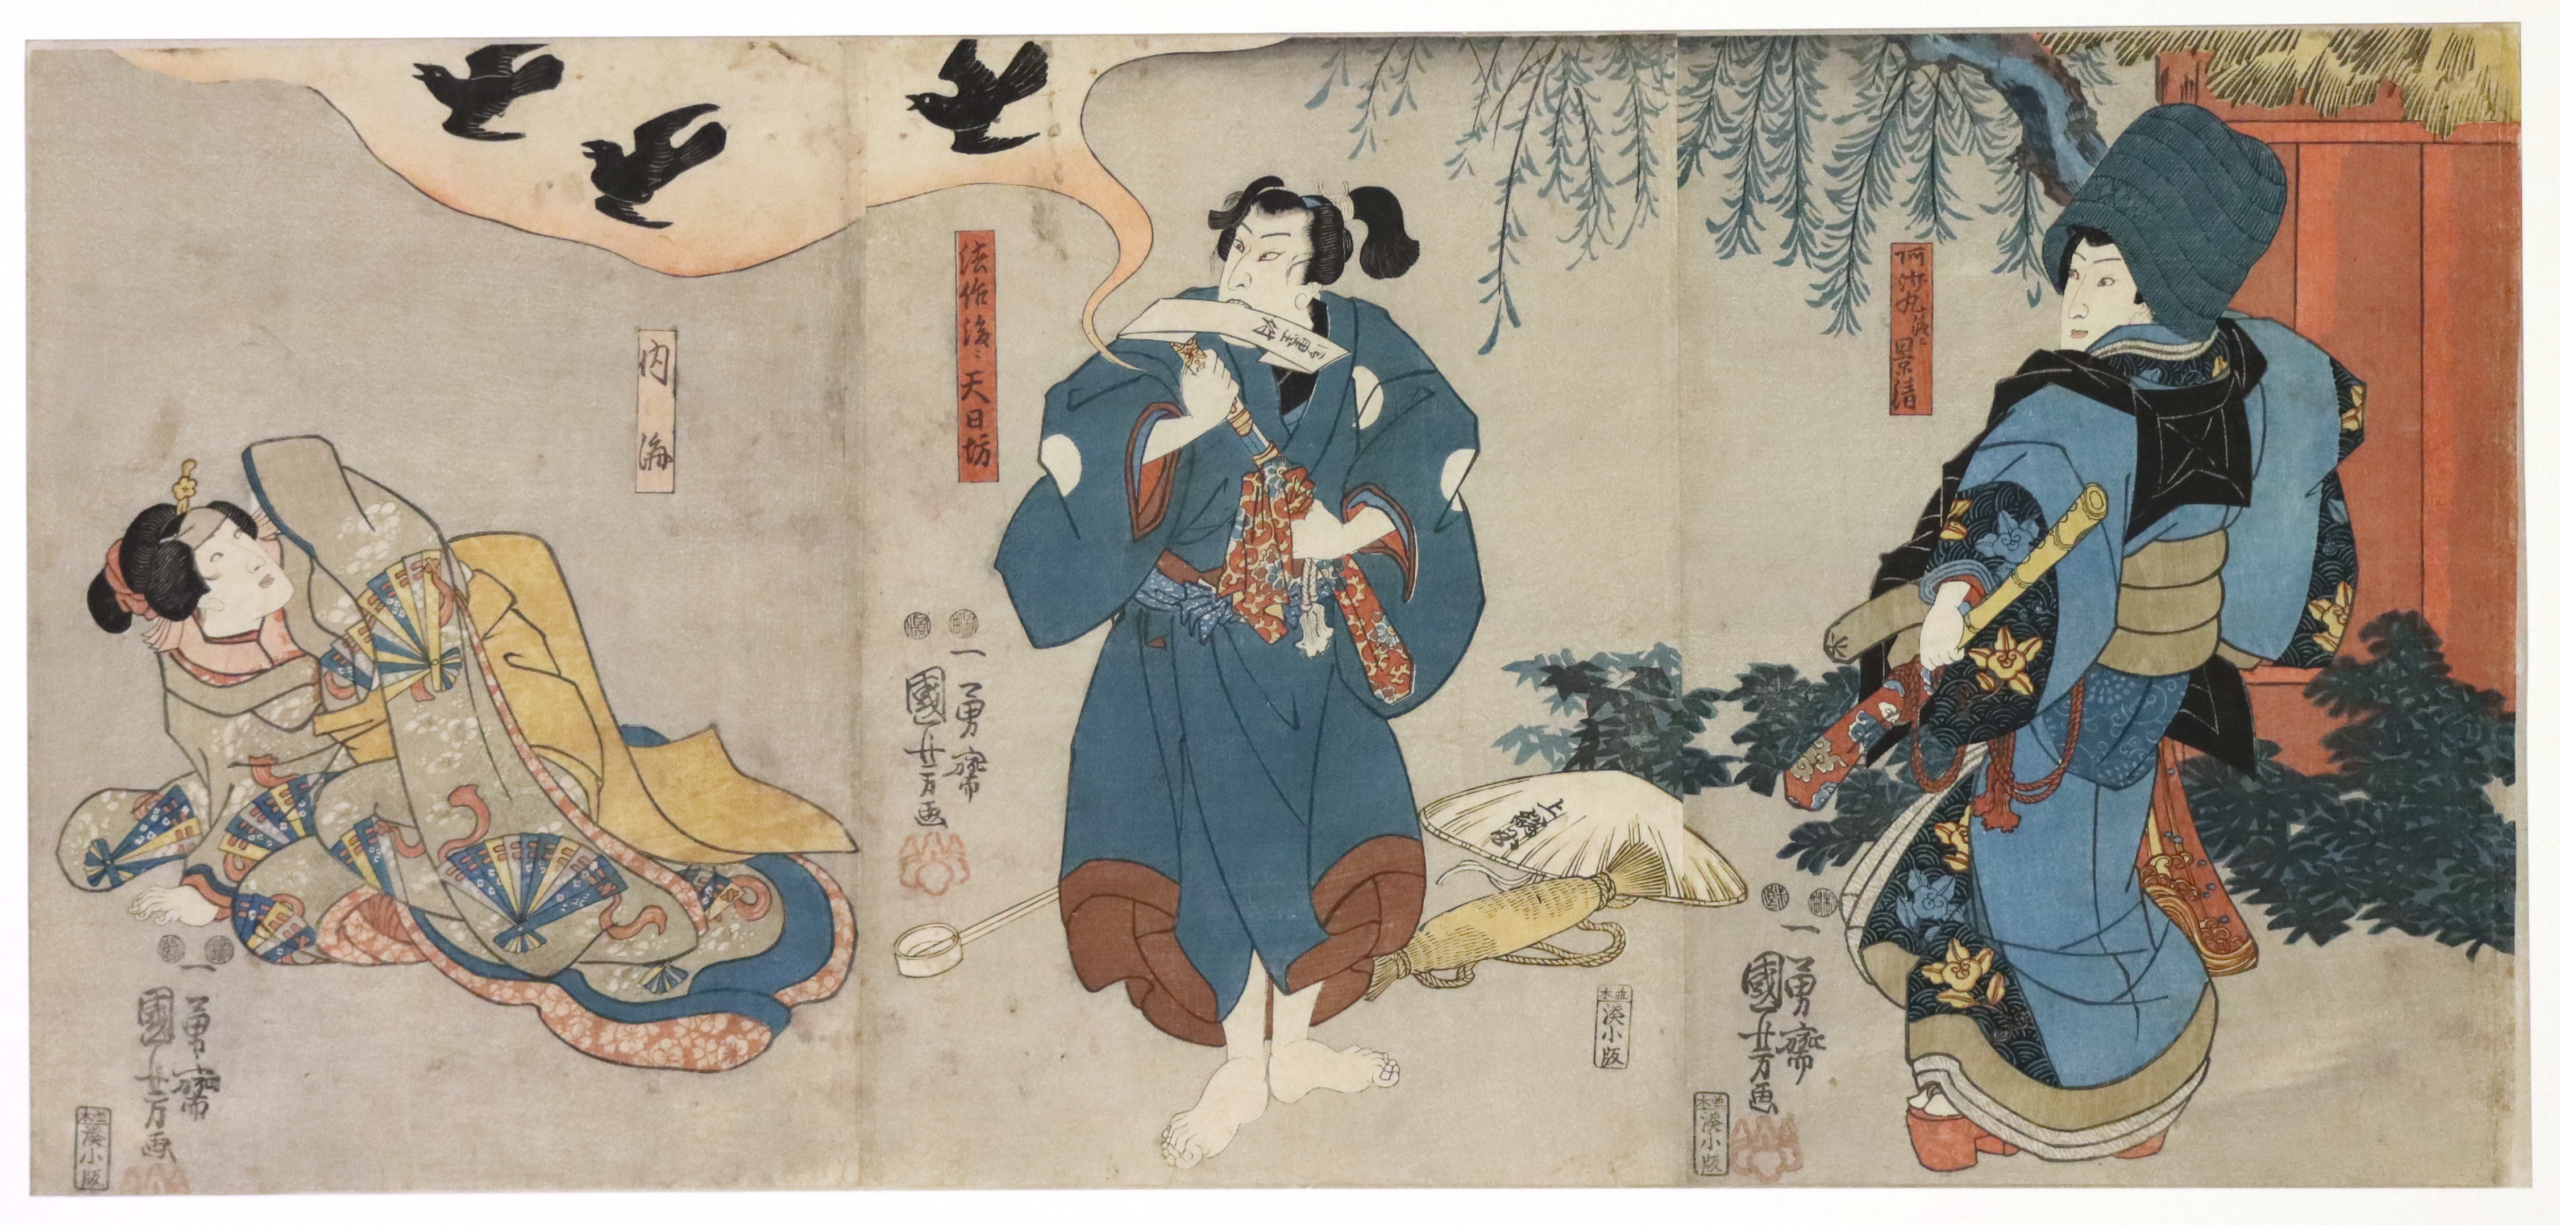 Acteurs, trois gravure sur bois au format oban tate-e, 1847-52